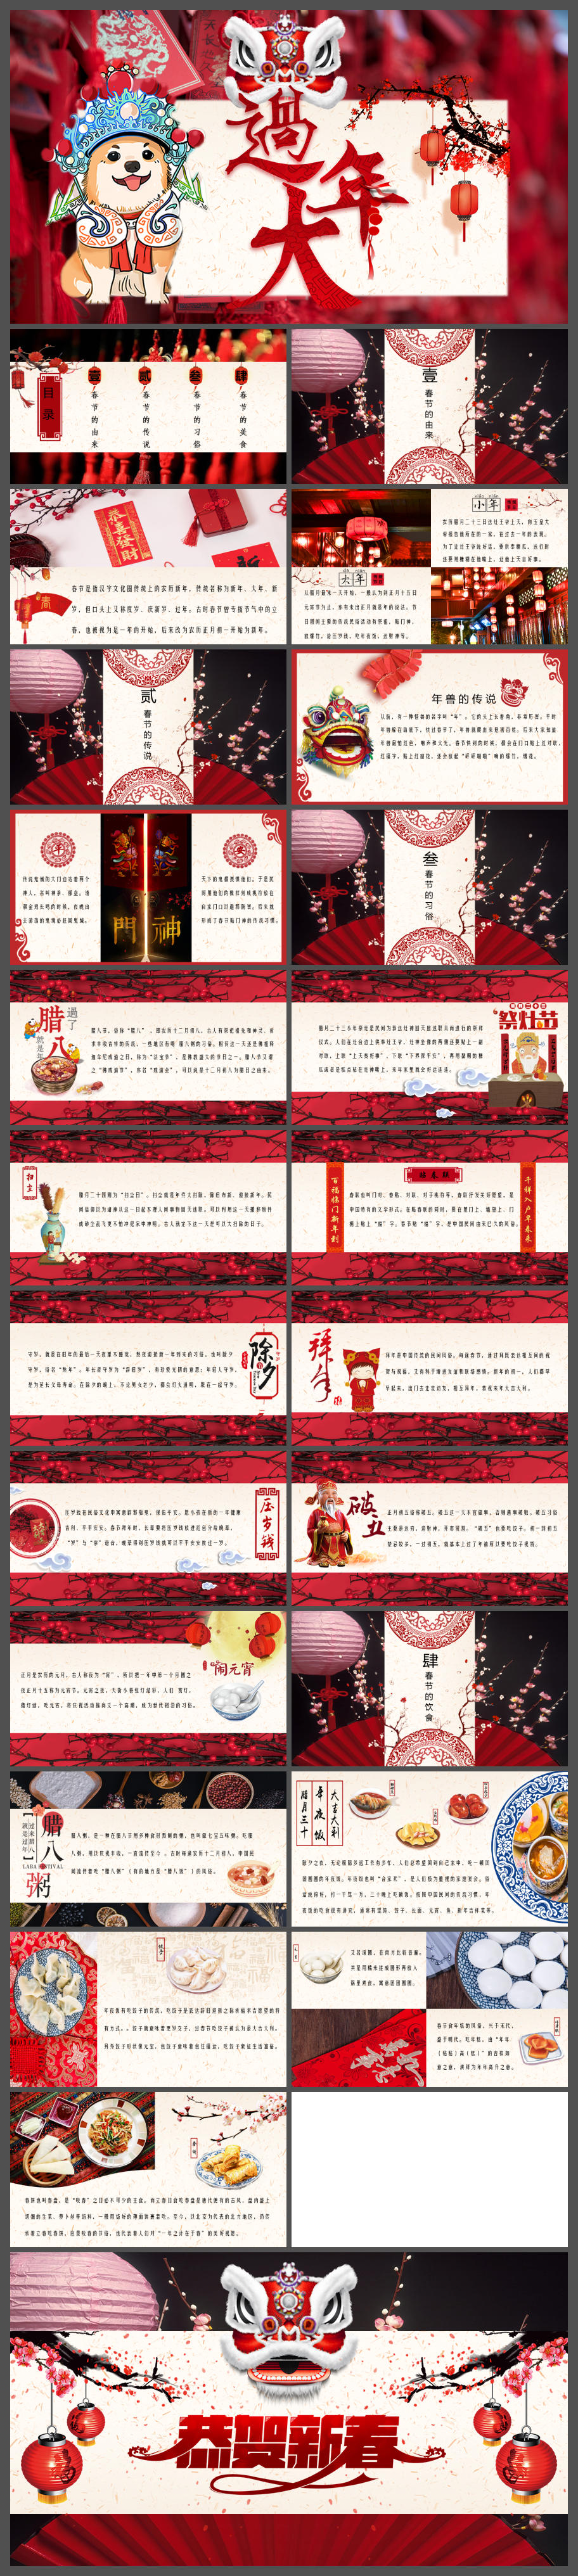 中国传统节日春节习俗介绍ppt模板